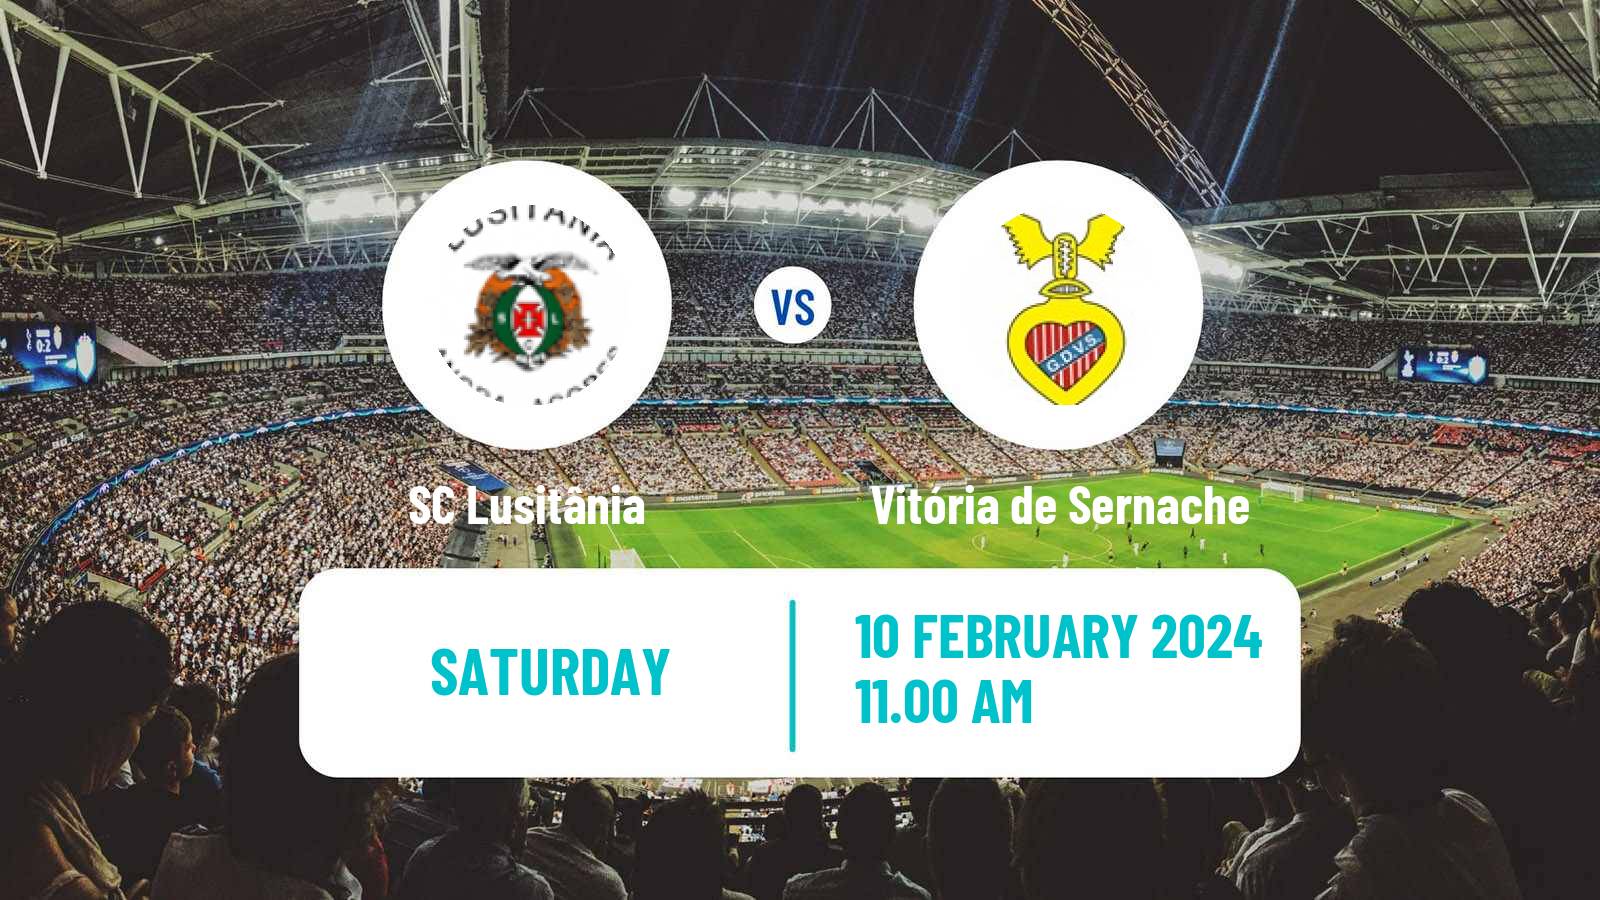 Soccer Campeonato de Portugal - Group C SC Lusitânia - Vitória de Sernache